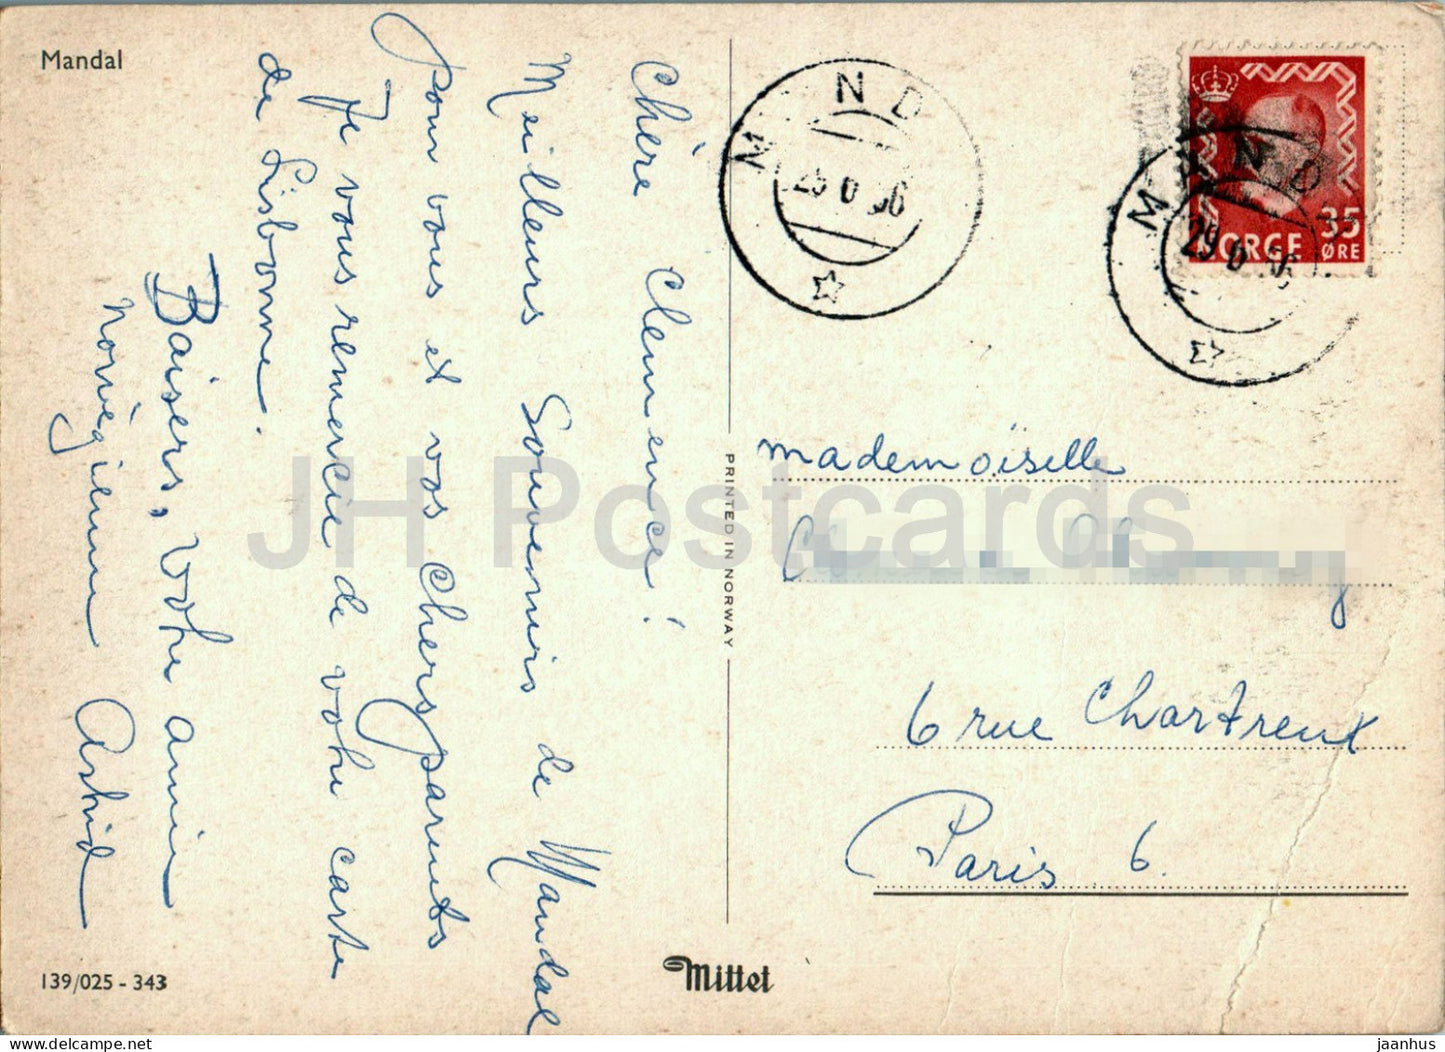 Mandal - carte postale ancienne - 1956 - Norvège - utilisé 